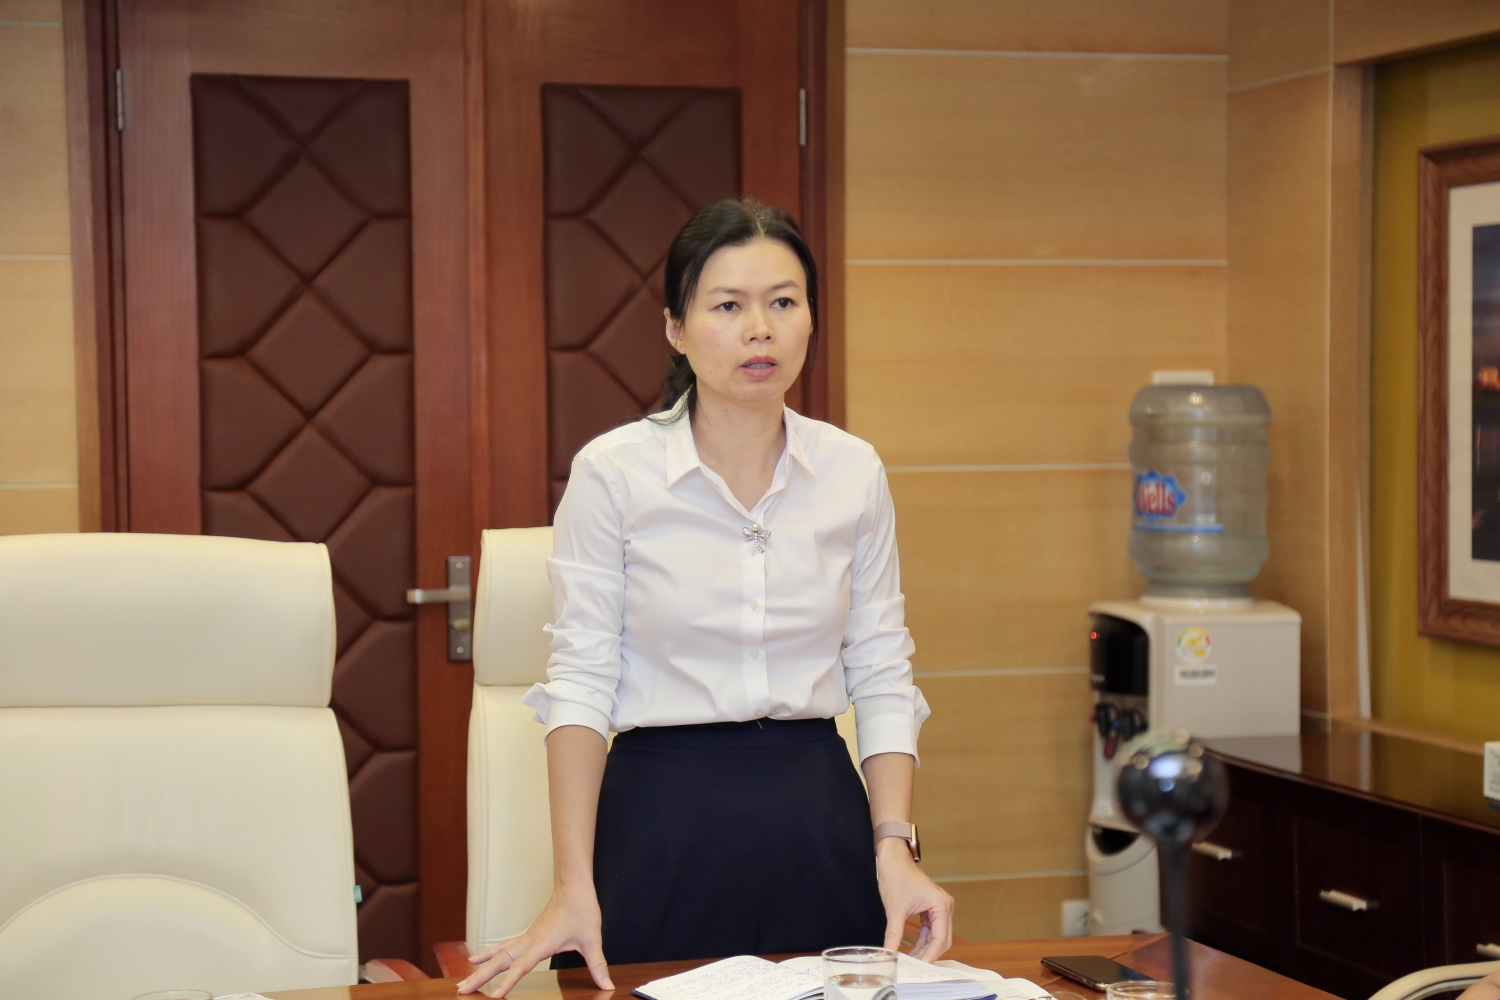  Đồng chí Ngô Hồng Vân, Phó Bí thư thường trực Đảng ủy PV Power phát biểu chỉ đạo